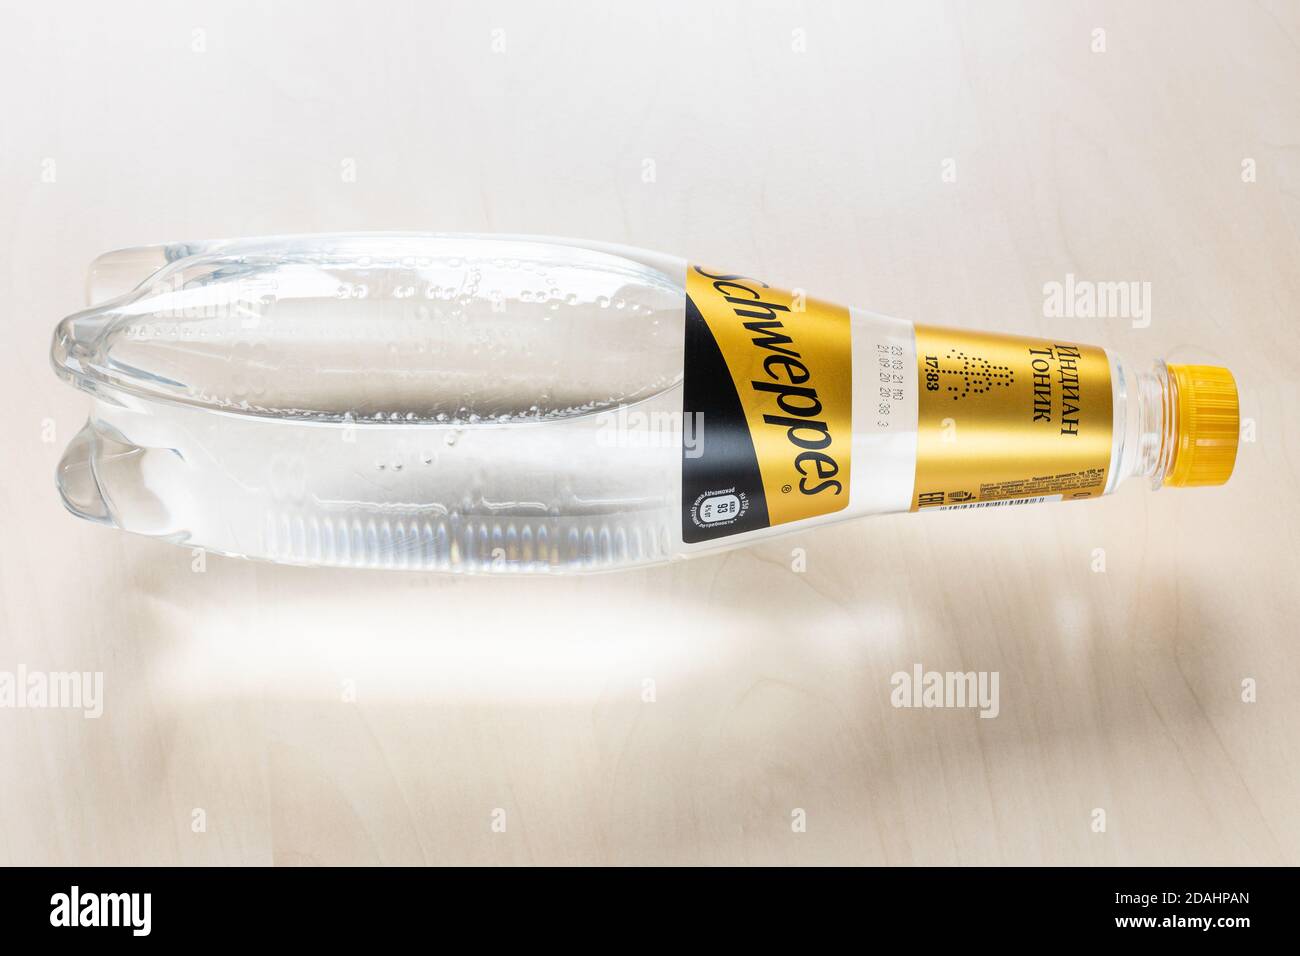 MOSCA, RUSSIA - 4 NOVEMBRE 2020: Vista dall'alto di una bottiglia di acqua tonica indiana di Schweppes sdraiata in edizione russa sulla tavola marrone chiaro. Schweppes è la bacchetta Foto Stock